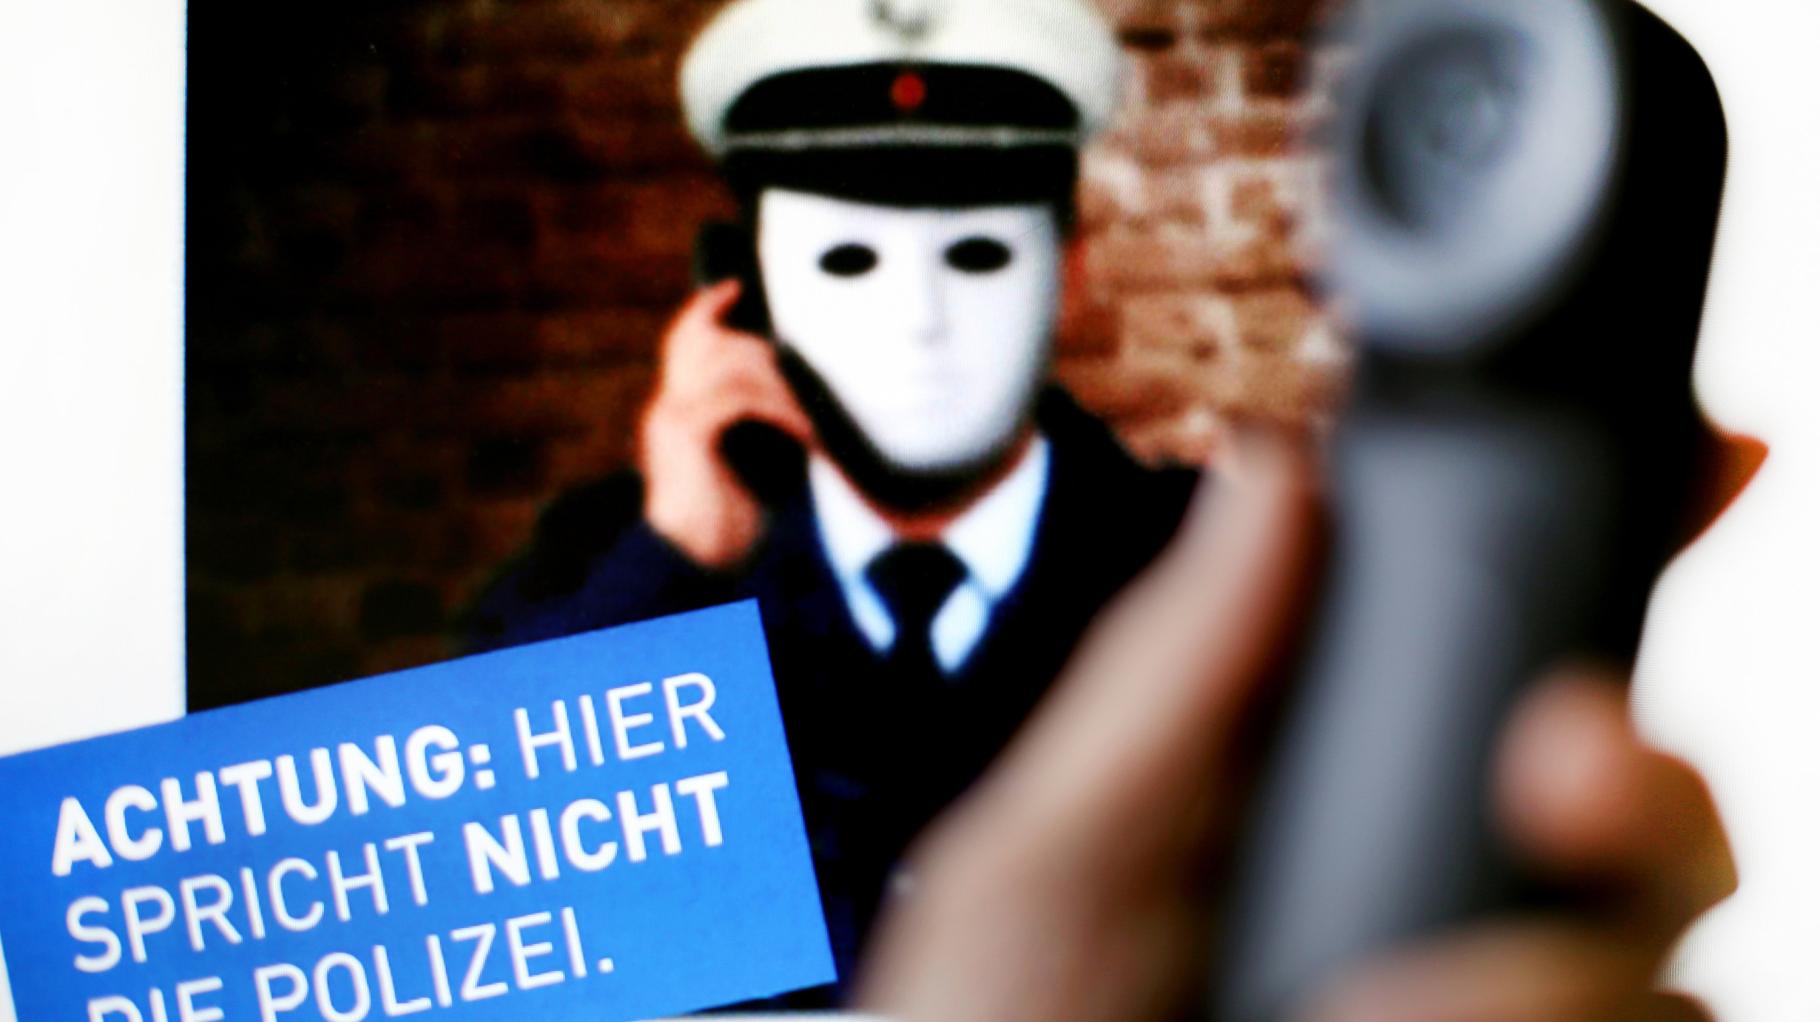 Polizeiinspektion Ludwigslust warnt vor falschen Polizisten am Telefon